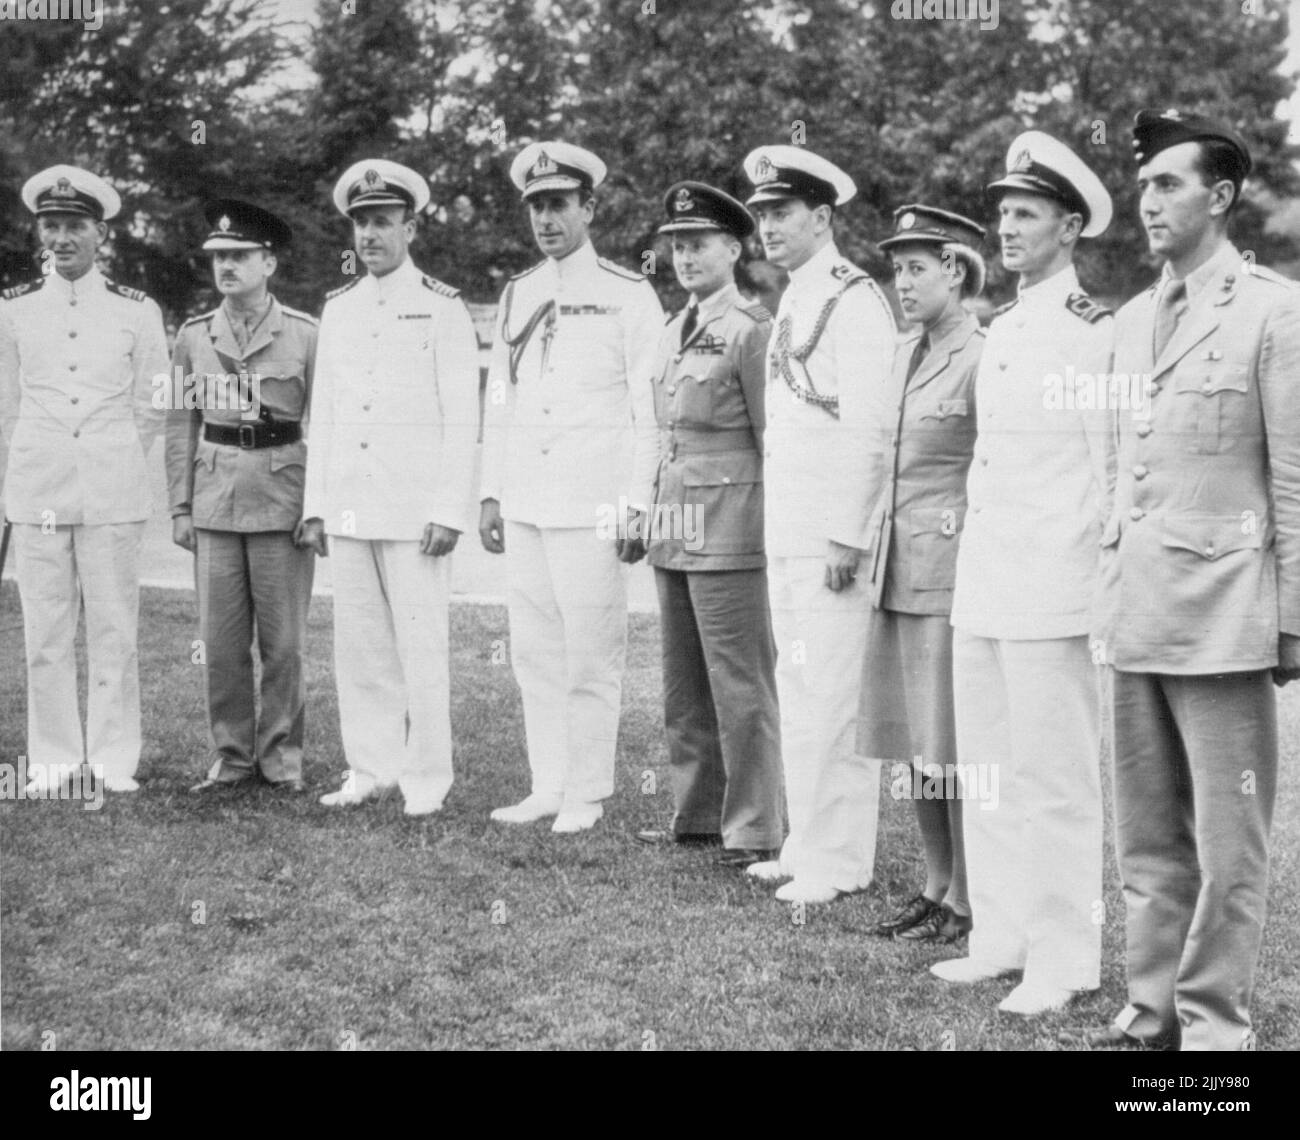 Lord Louis e il personale arrivano a discutere i piani Lord Louis Mountbatten (quarto da sinistra), nuovo Comandante alleato del sud-est asiatico, arriva con il personale per visitare ADM. Ernest J. King, Capo della Marina degli Stati Uniti, per iniziare le discussioni si prevede che si tradurrà in piani finali per ***** JAPS dalla Birmania. (L-R) Lt. Comdr. C.E.H. Batham, R.N., Lt. Col. M.E. ***** , Cap. H.D. Tollemache, R.N., Lord Louis , Lt. Comdr. A. E. Levenson, ***** Cap A.W.F. Merer, Raf; Corp Joy Smith, ATS; Lt. Comdr. C.G.H. ***** , E Major R.R. Fairbarn. Agosto 26, 1943. (Foto di AP Wirephoto). Foto Stock